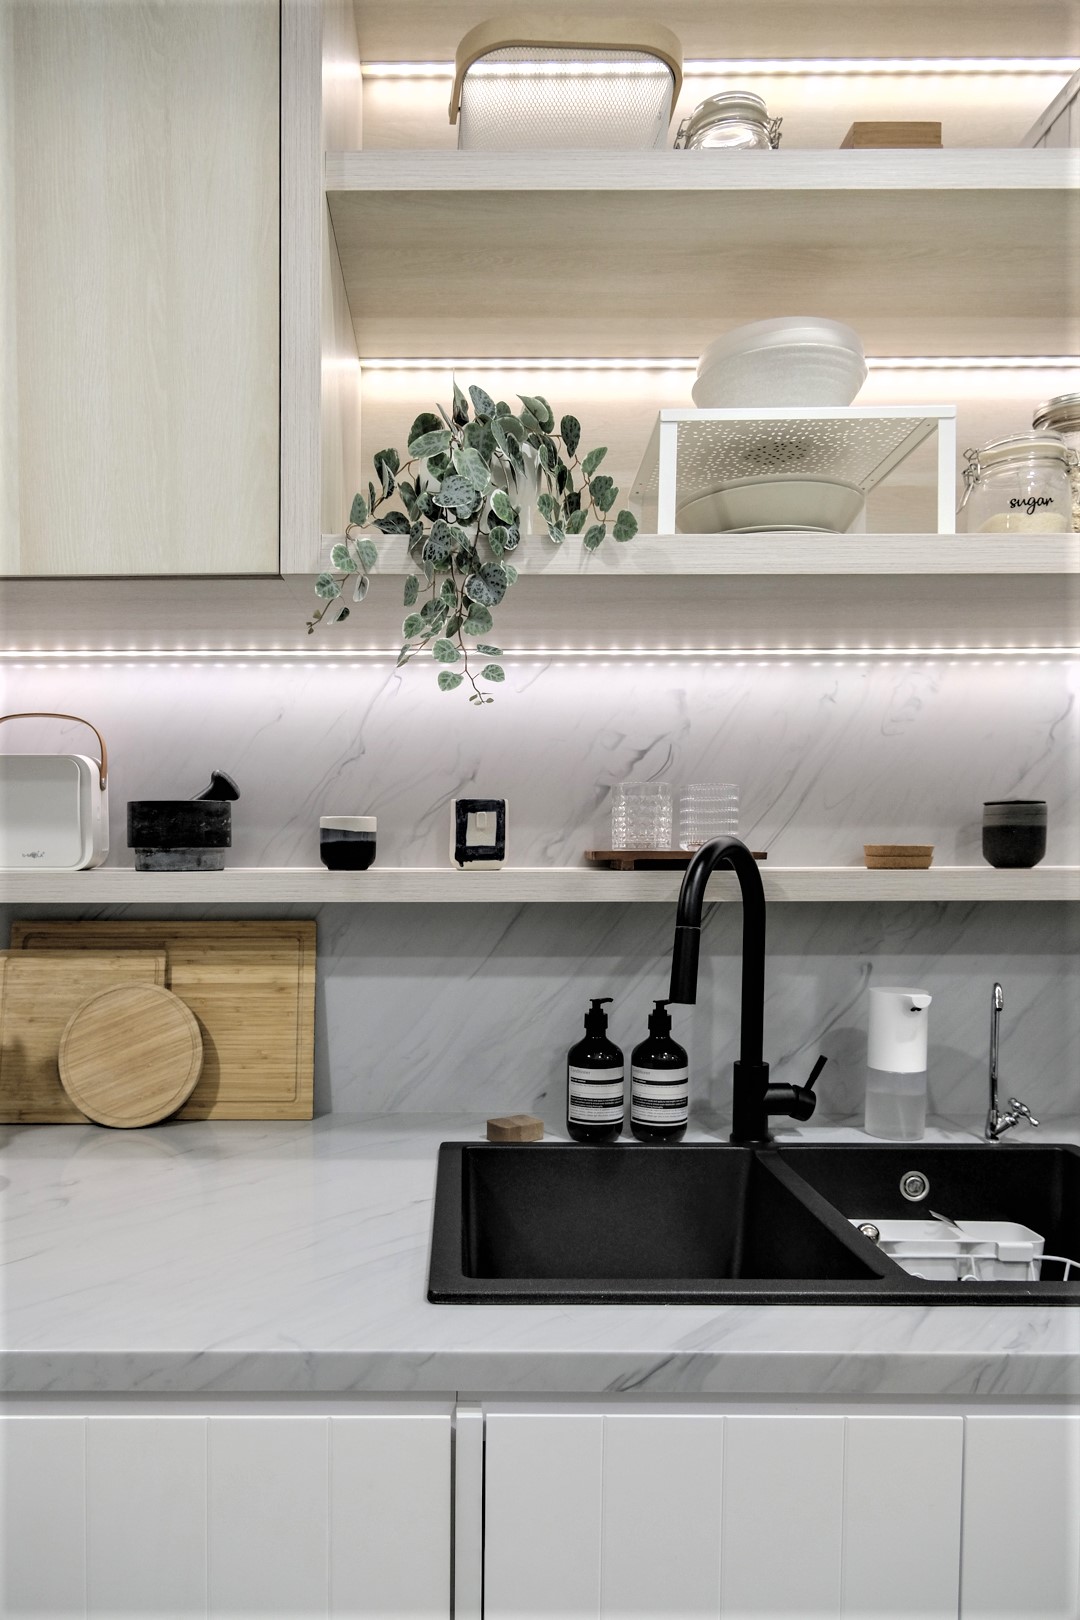 Небольшая кухня квартиры, спроектированная со шкафами из светлого дерева, имеет полосы светодиодного освещения, которые сохраняют пространство ярким.